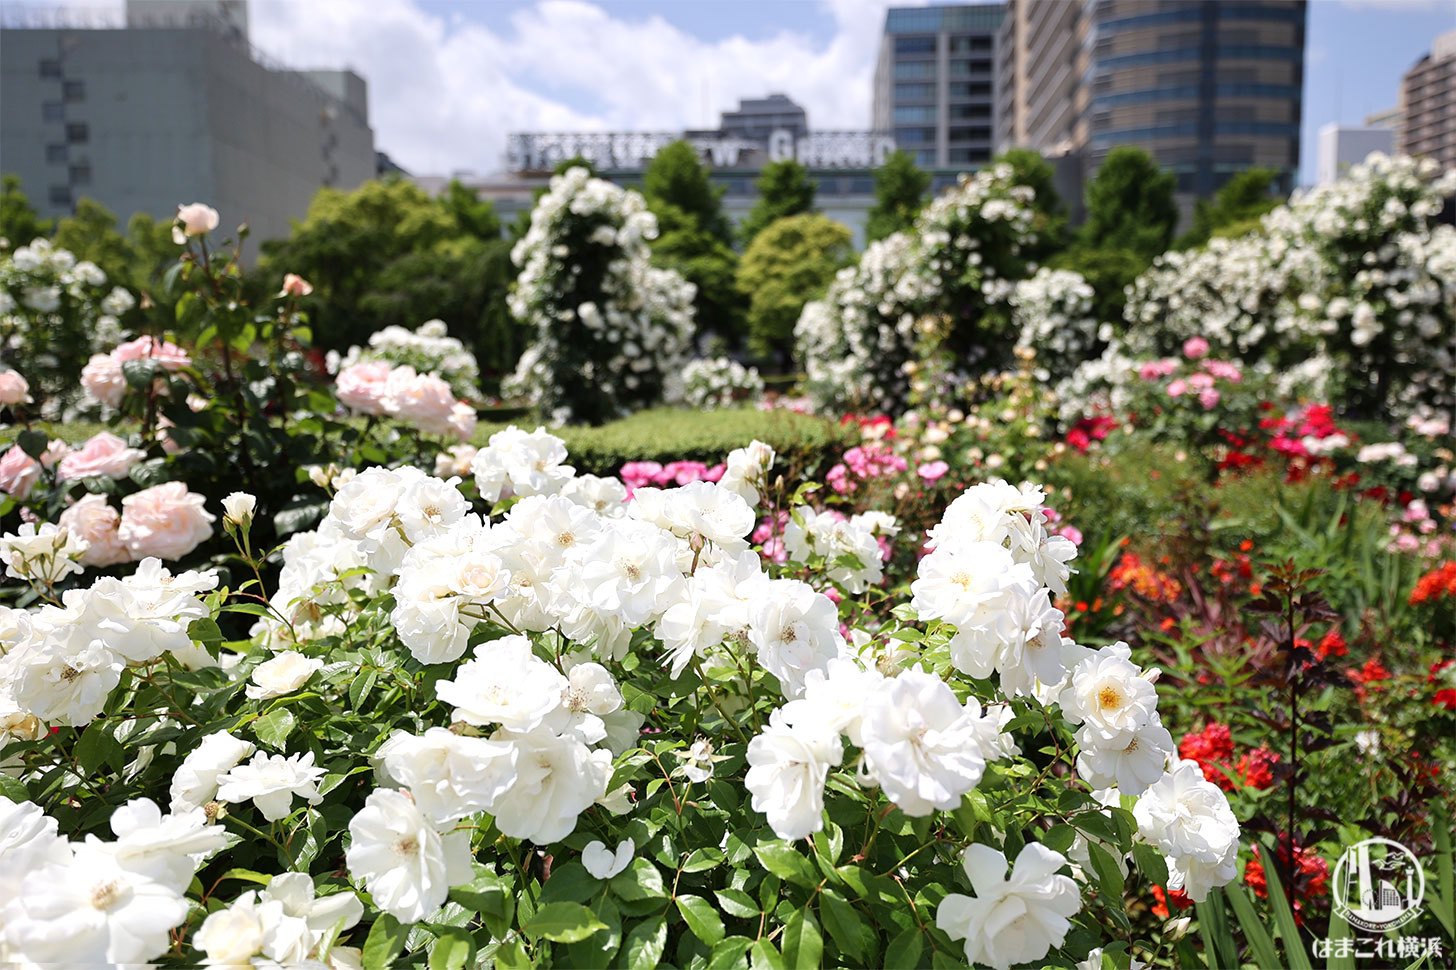 山下公園のバラが美しすぎた 圧倒的ボリューム 彩り豊かな癒しのバラ散歩 はまこれ横浜